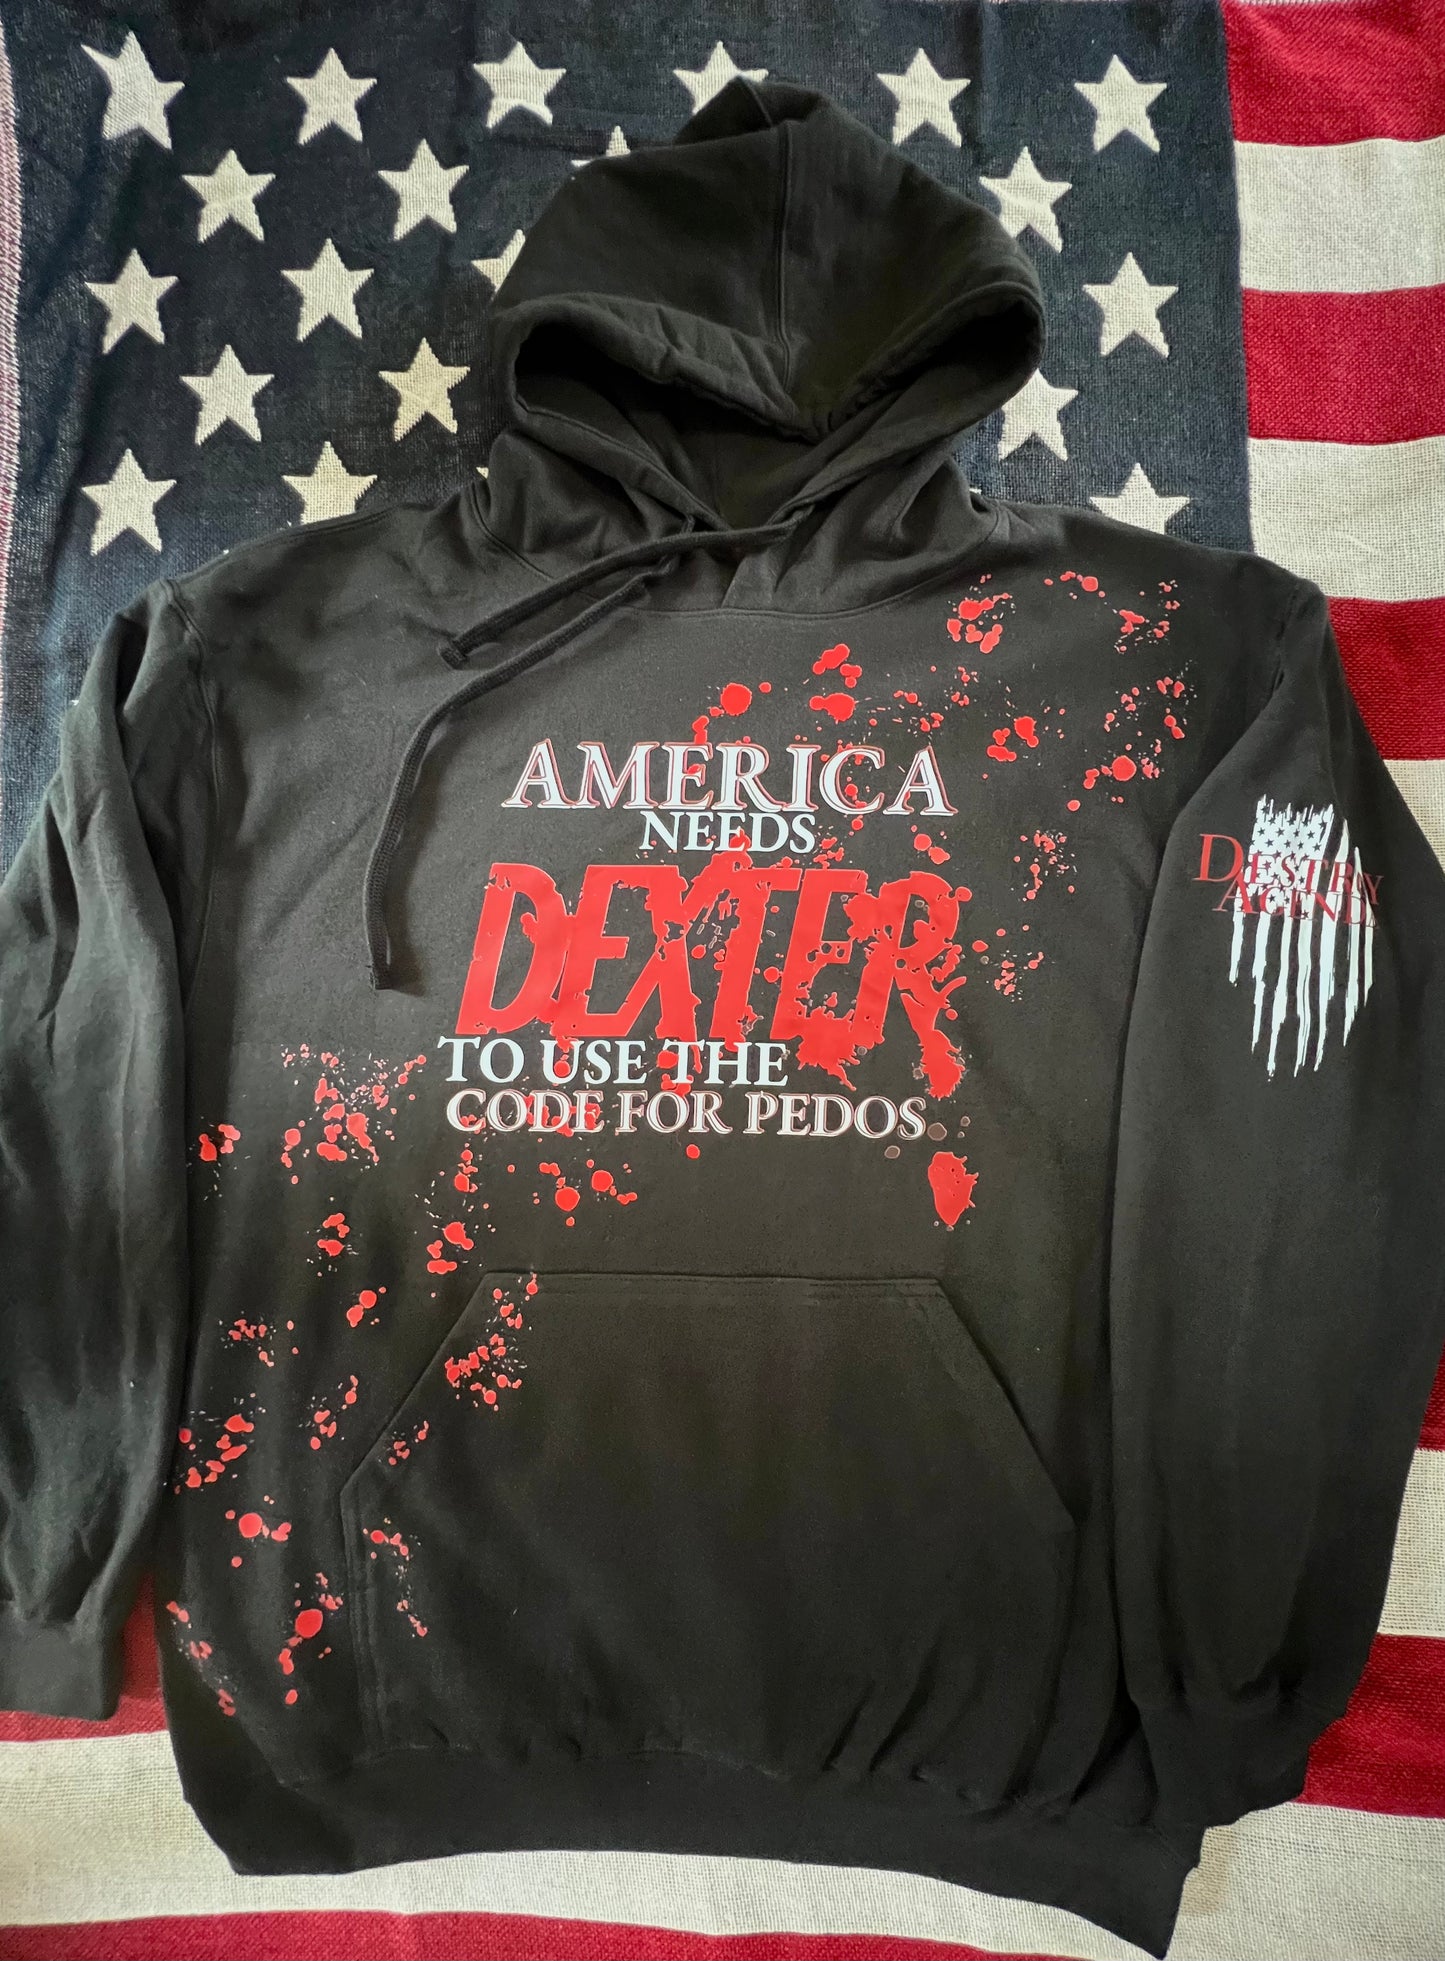 America needs Dexter